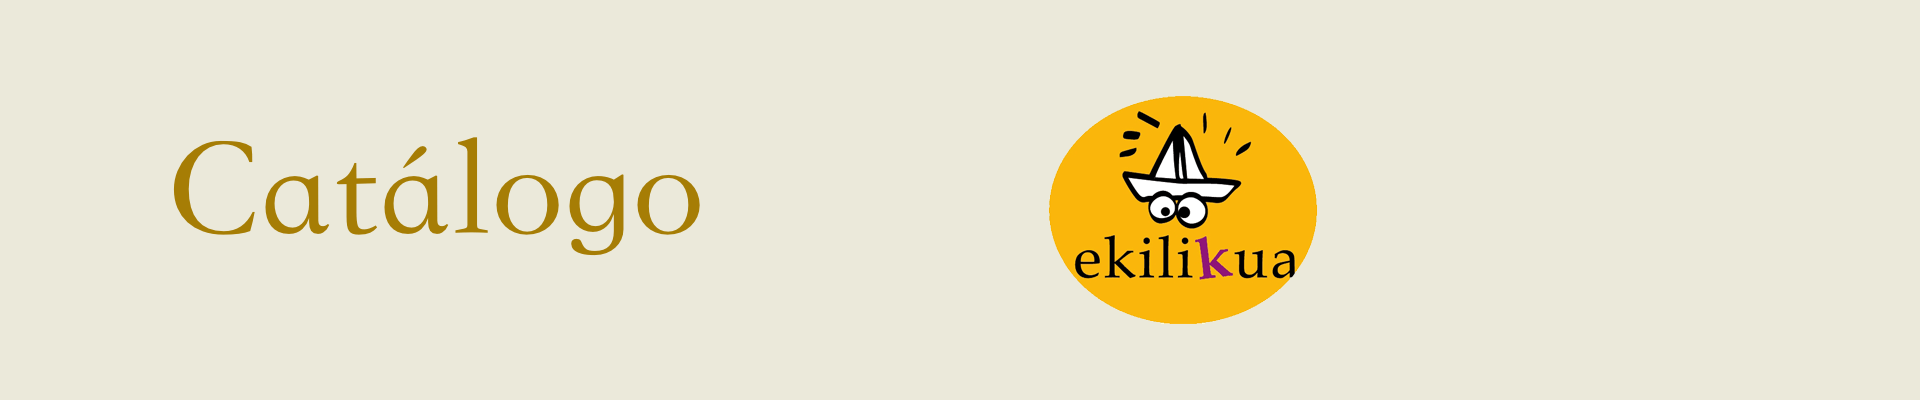 Comprar juguetes educativos para niños de la marca Ekilikua | Veobio